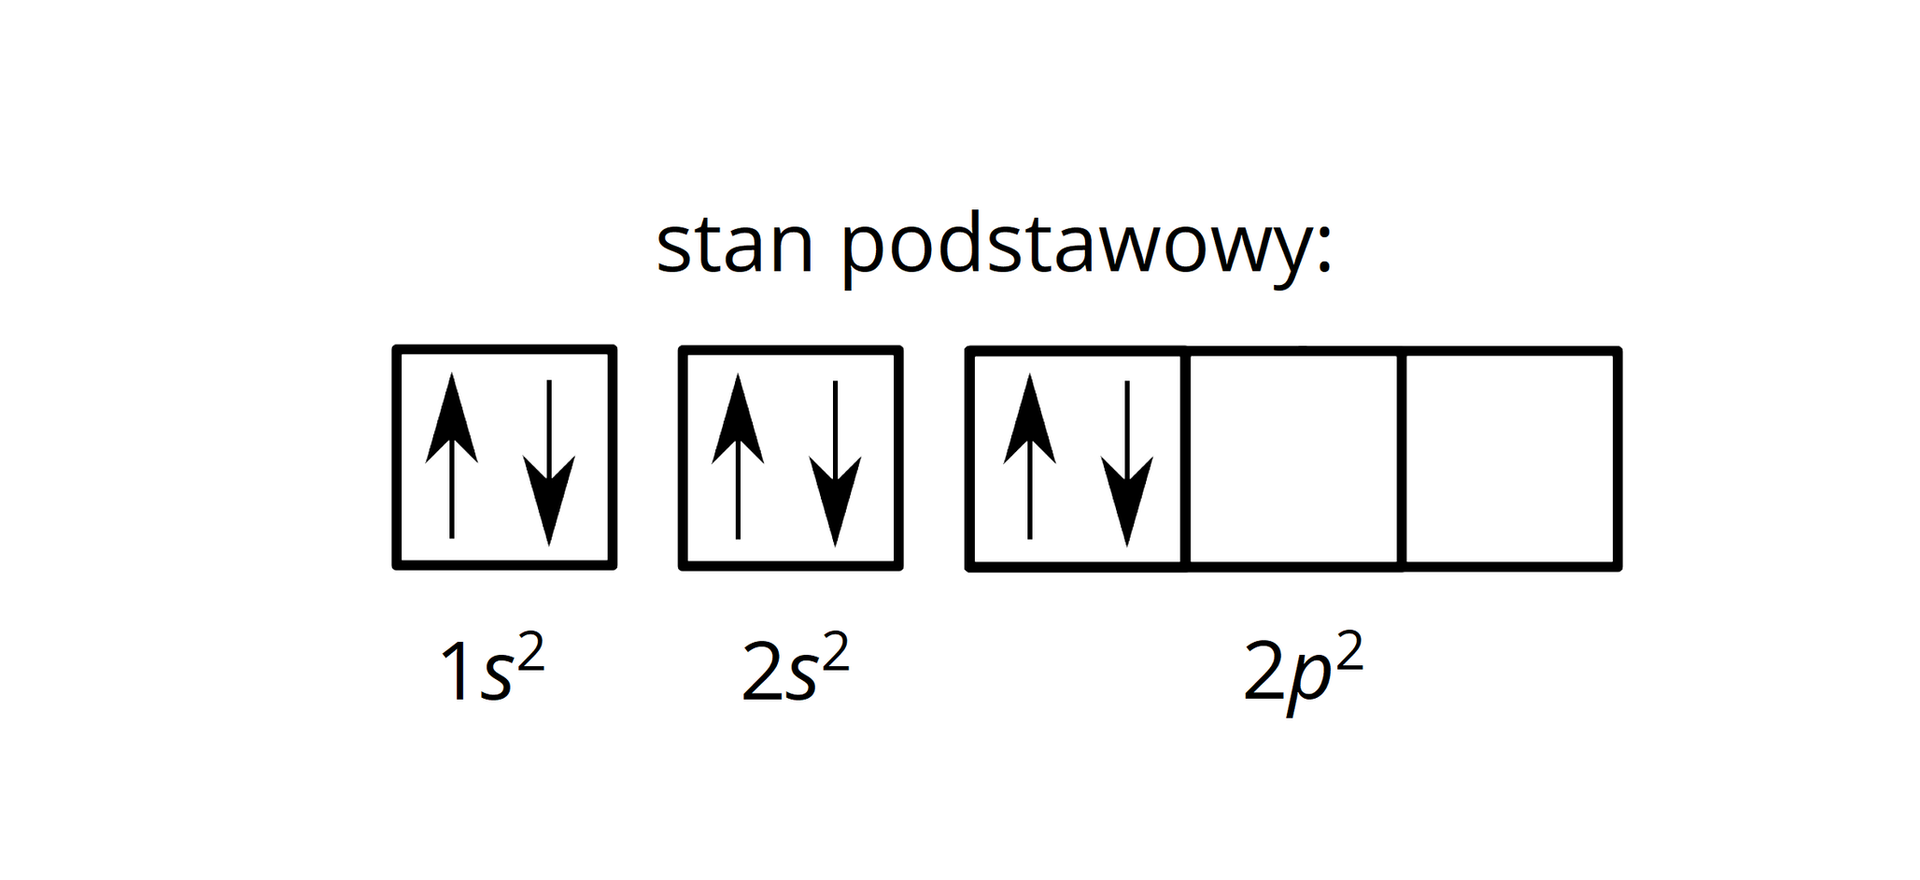 Ilustracja przedstawia zapis klatkowy konfiguracji elektronowej atomu węgla w stanie podstawowym zaproponowany przez ucznia. 1s2, co reprezentuje pojedyncza klatka, w której znajdują się dwie strzałki, jedna skierowana do góry, zaś druga do dołu. Dalej 2s2, co odpowiada pojedynczej klatce, w której znajdują się dwie strzałki, jedna skierowana do góry, zaś druga do dołu. Następnie, 2p2, której odpowiadają trzy klatki, z czego w pierwszej znajdują się dwie strzałki, jedna skierowana do góry, zaś druga do dołu.